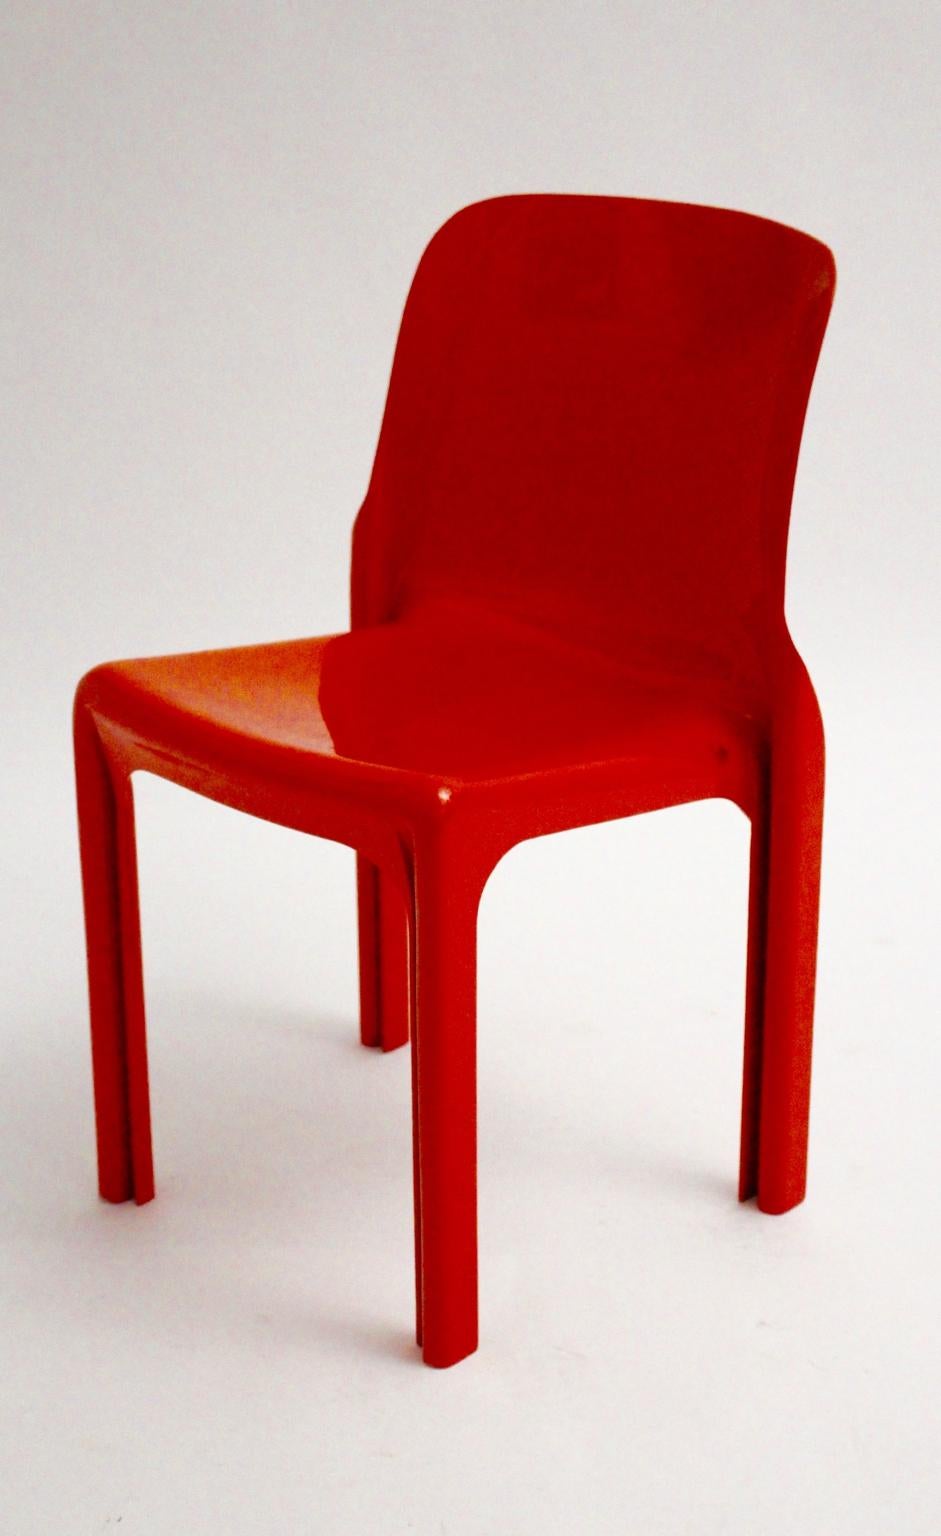 Space Age rotes Vintage-Stuhlmodell Selene aus Kunststoff, entworfen von Vico Magistretti 1968 für Artemide Milano, Italien.
Der Stuhl zeigt einen sehr guten Vintage-Zustand mit feinen Kratzern auf der glänzenden Oberfläche.
Auch der Stuhl ist ein